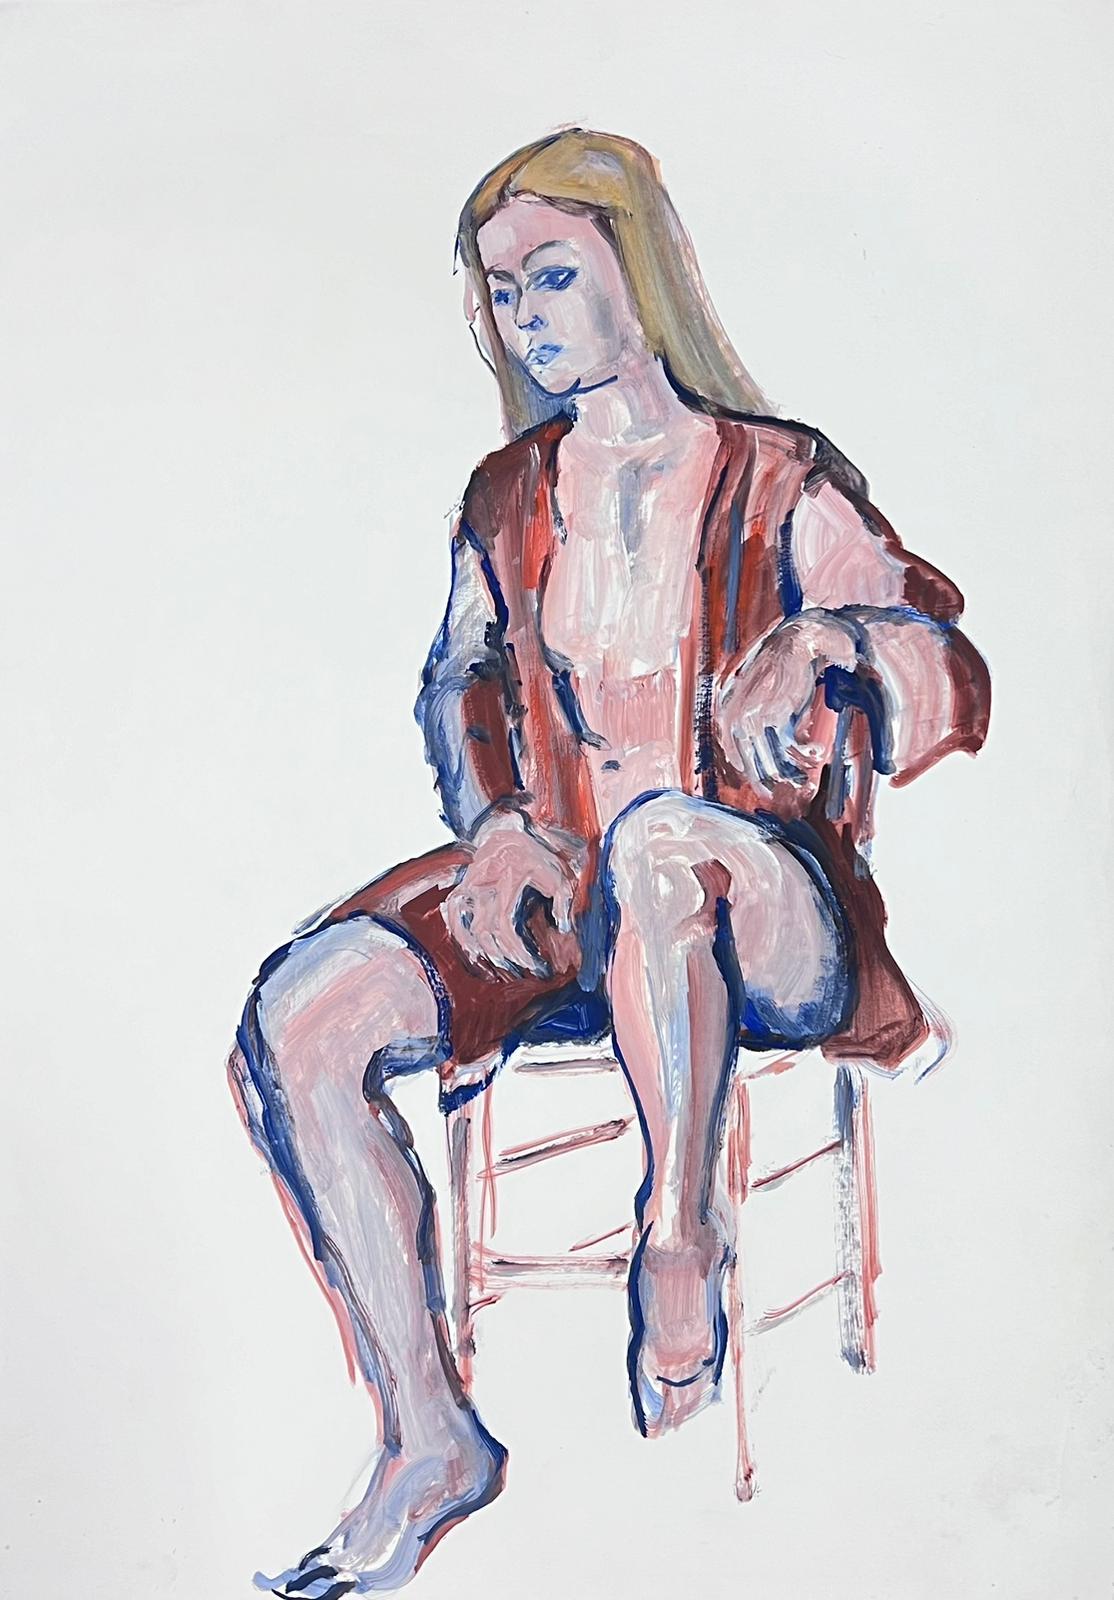 Portrait Painting French Modernist - Modèle de femme modelé sur chaise moderniste français des années 1970 Collection Provence